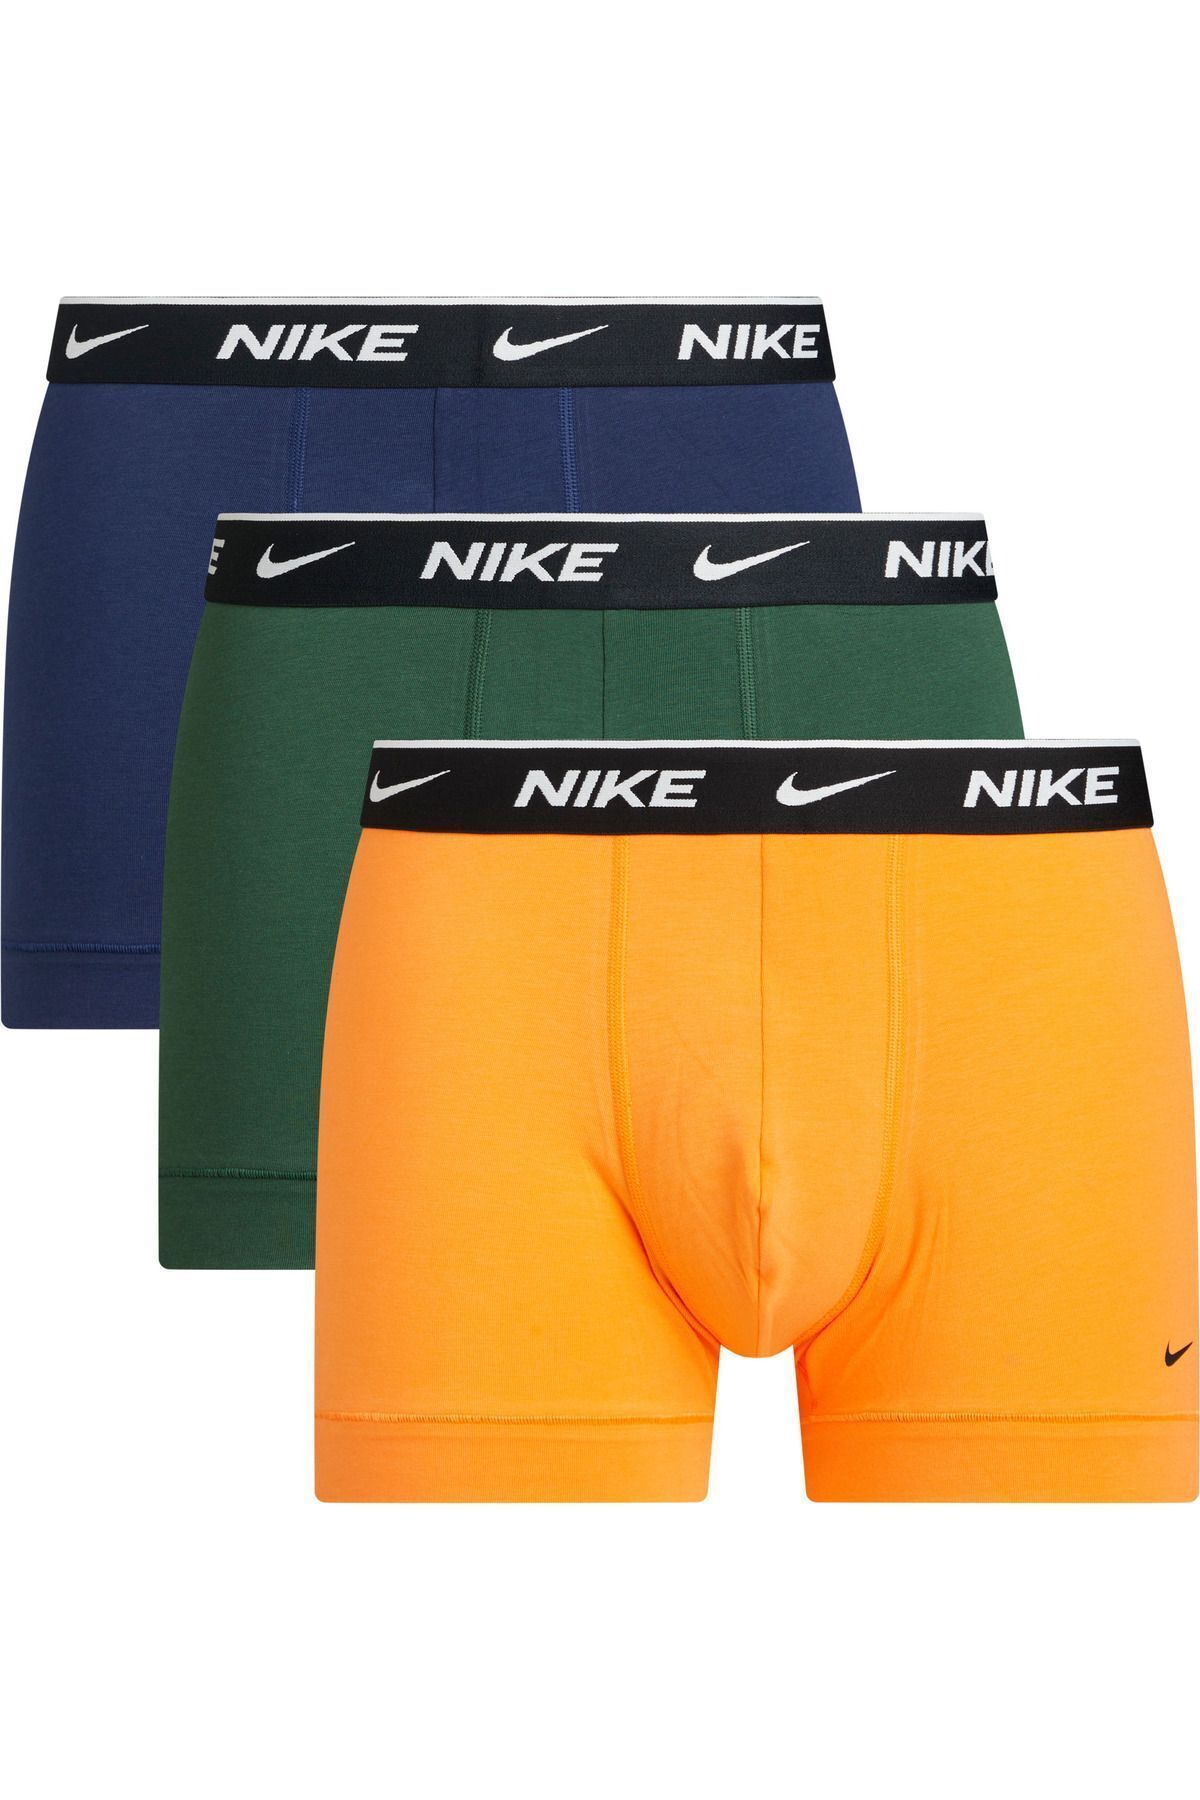 Nike Erkek Nike Marka Logolu Elastik Bantlı Günlük Kullanıma Uygun Lacivert-yeşil-turuncu Boxer 0000ke100